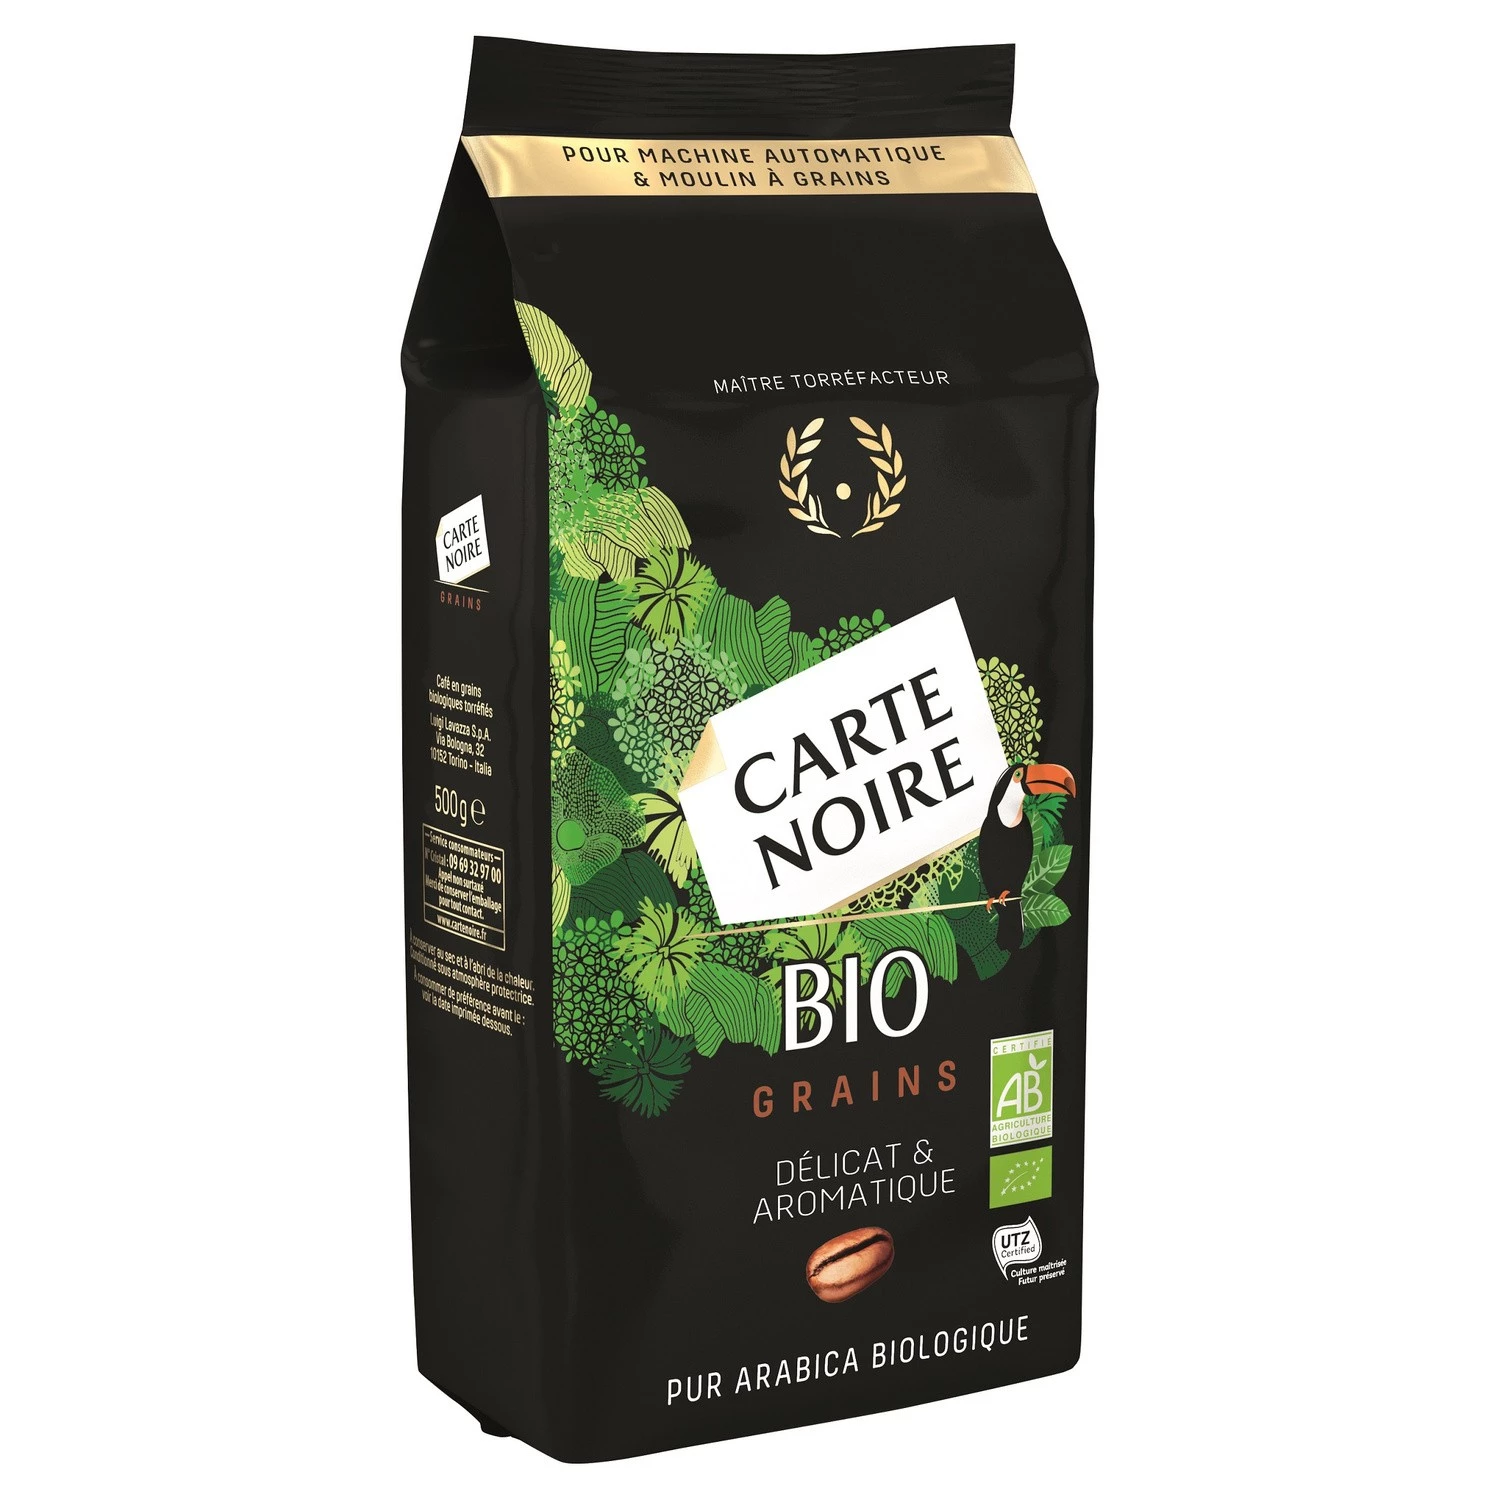 Zarte & aromatische Bio-Kaffeebohnen 500g - CARTE NOIRE